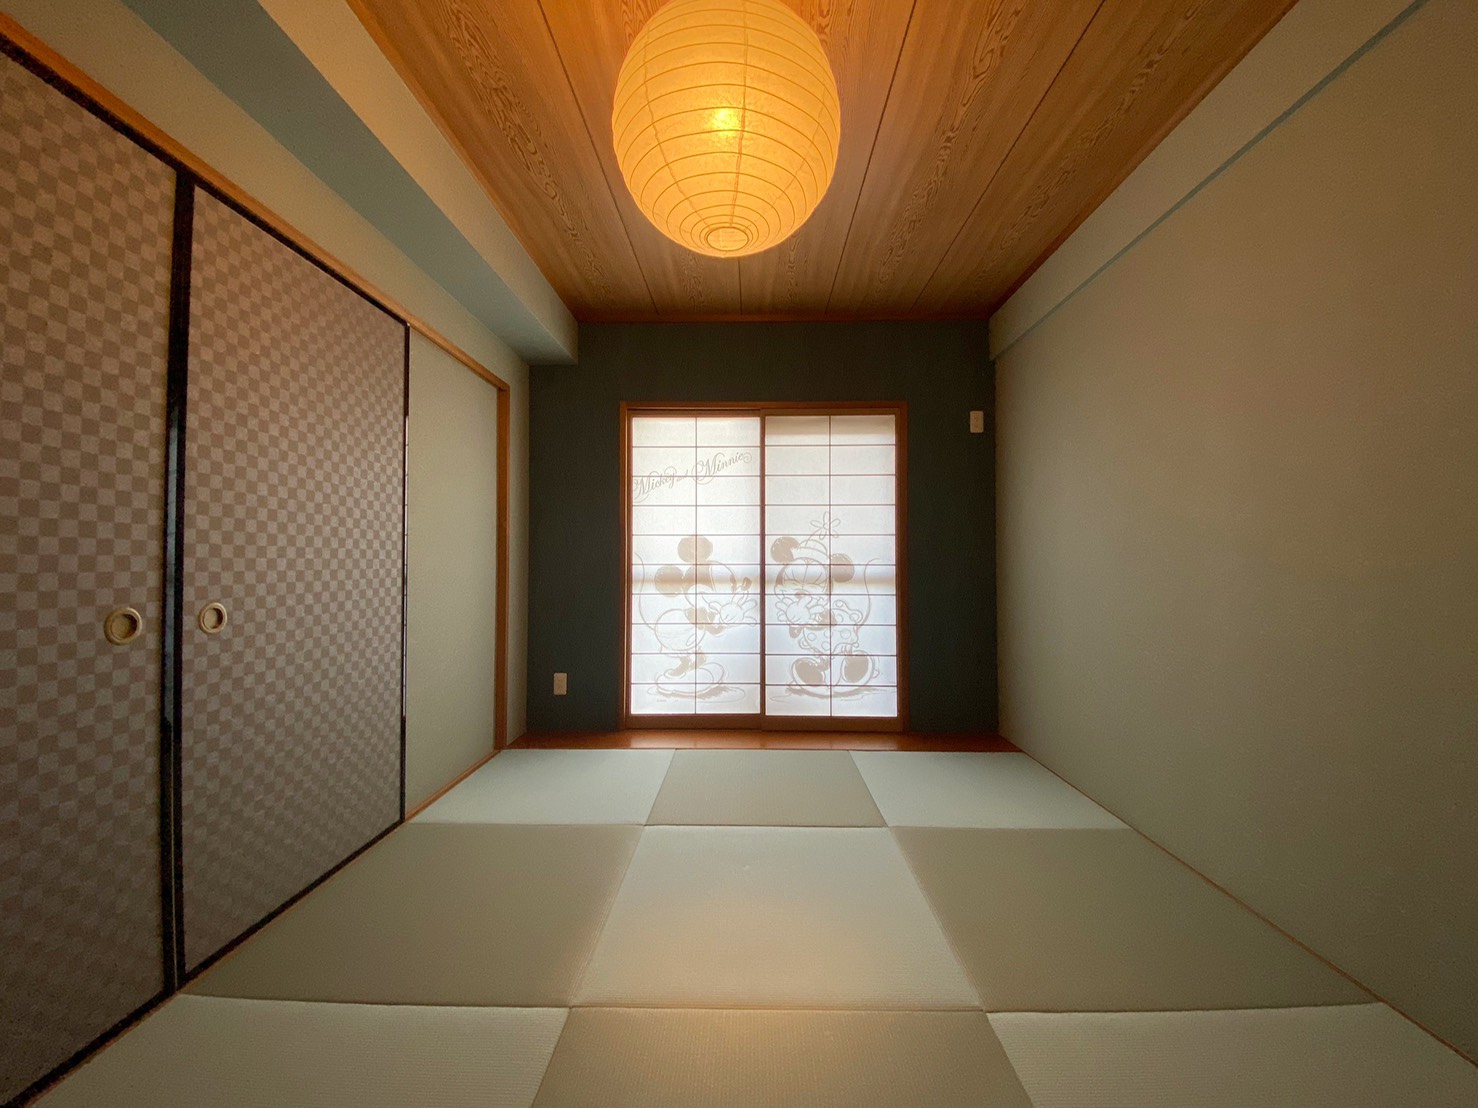 愛知県緑区のマンションリフォームを行いました。和室の畳の貼替え・壁紙や襖、木枠の交換をしています。 パートナーホーム施工実績|パートナーホーム